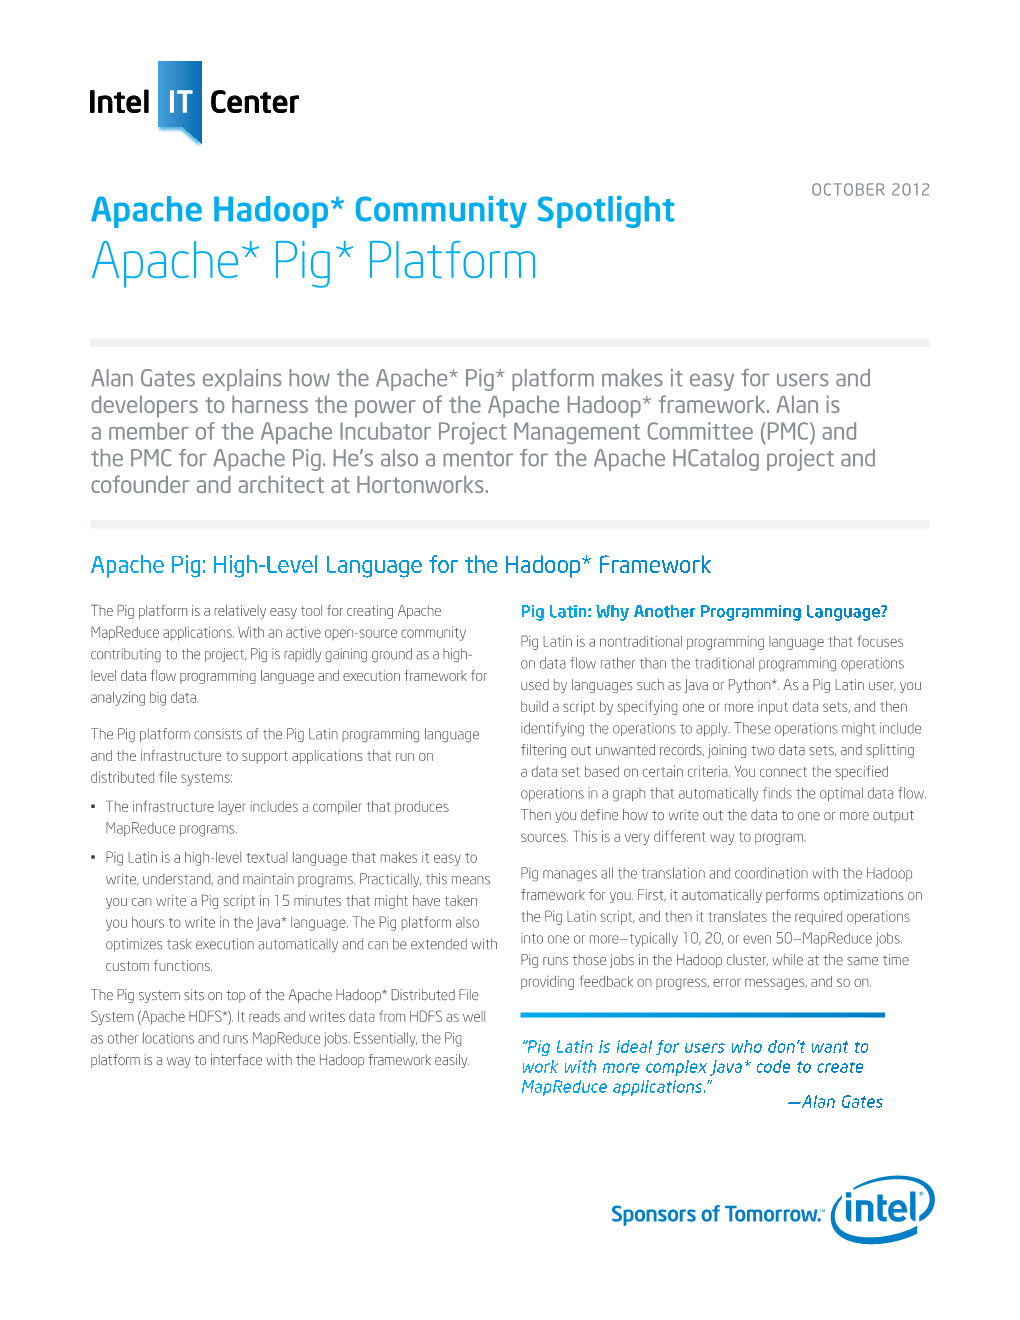 Apache Hadoop* Community Spotlight Apache* Pig* Platform